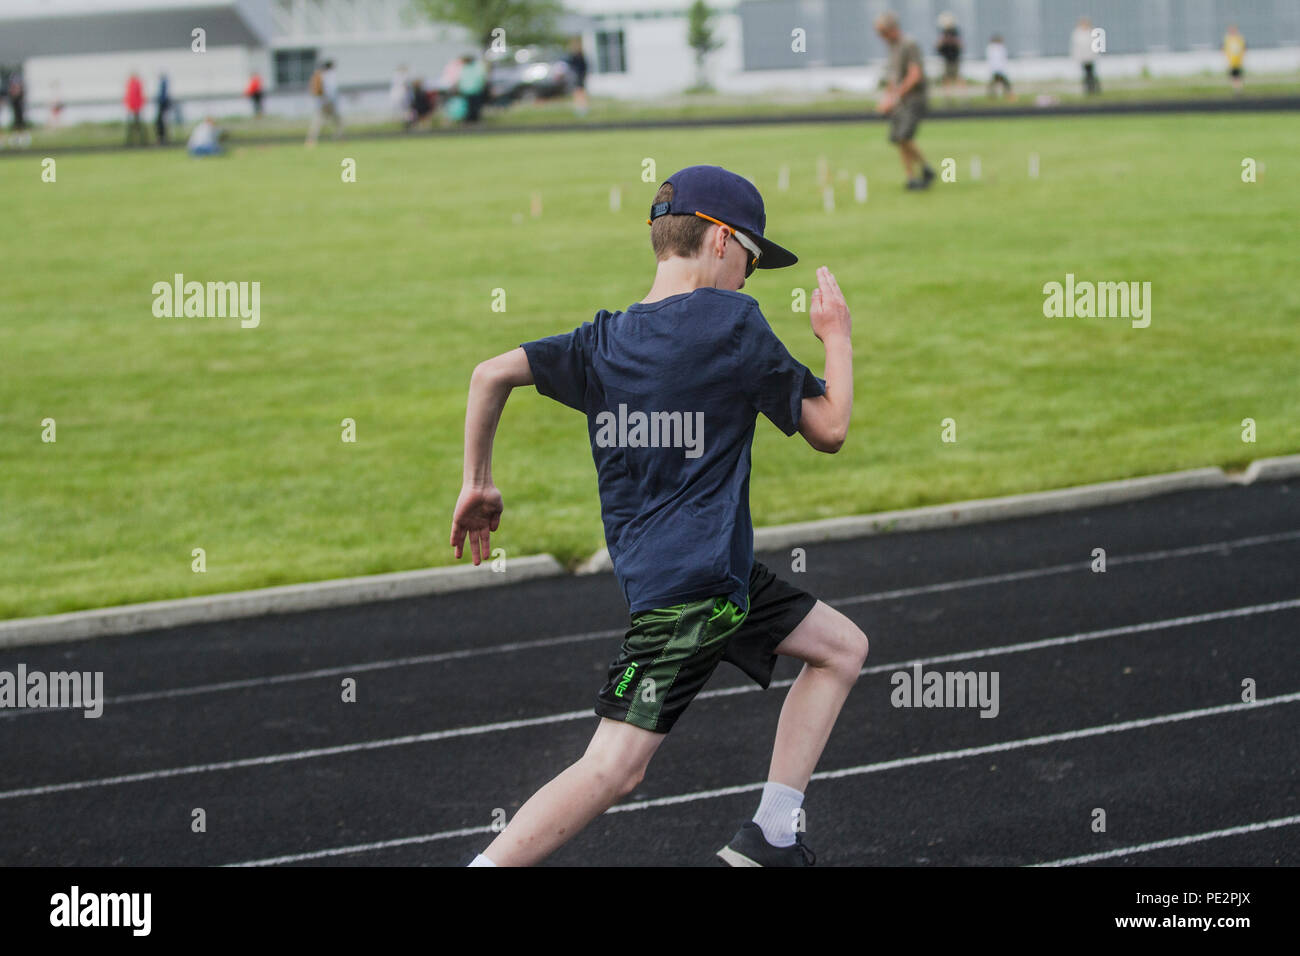 Giovane ragazzo in competizione in Track & Field, corsa sulla distanza, che indossa pantaloni corti e t-shirt, cappello e occhiali da sole.. Modello rilasciato Foto Stock